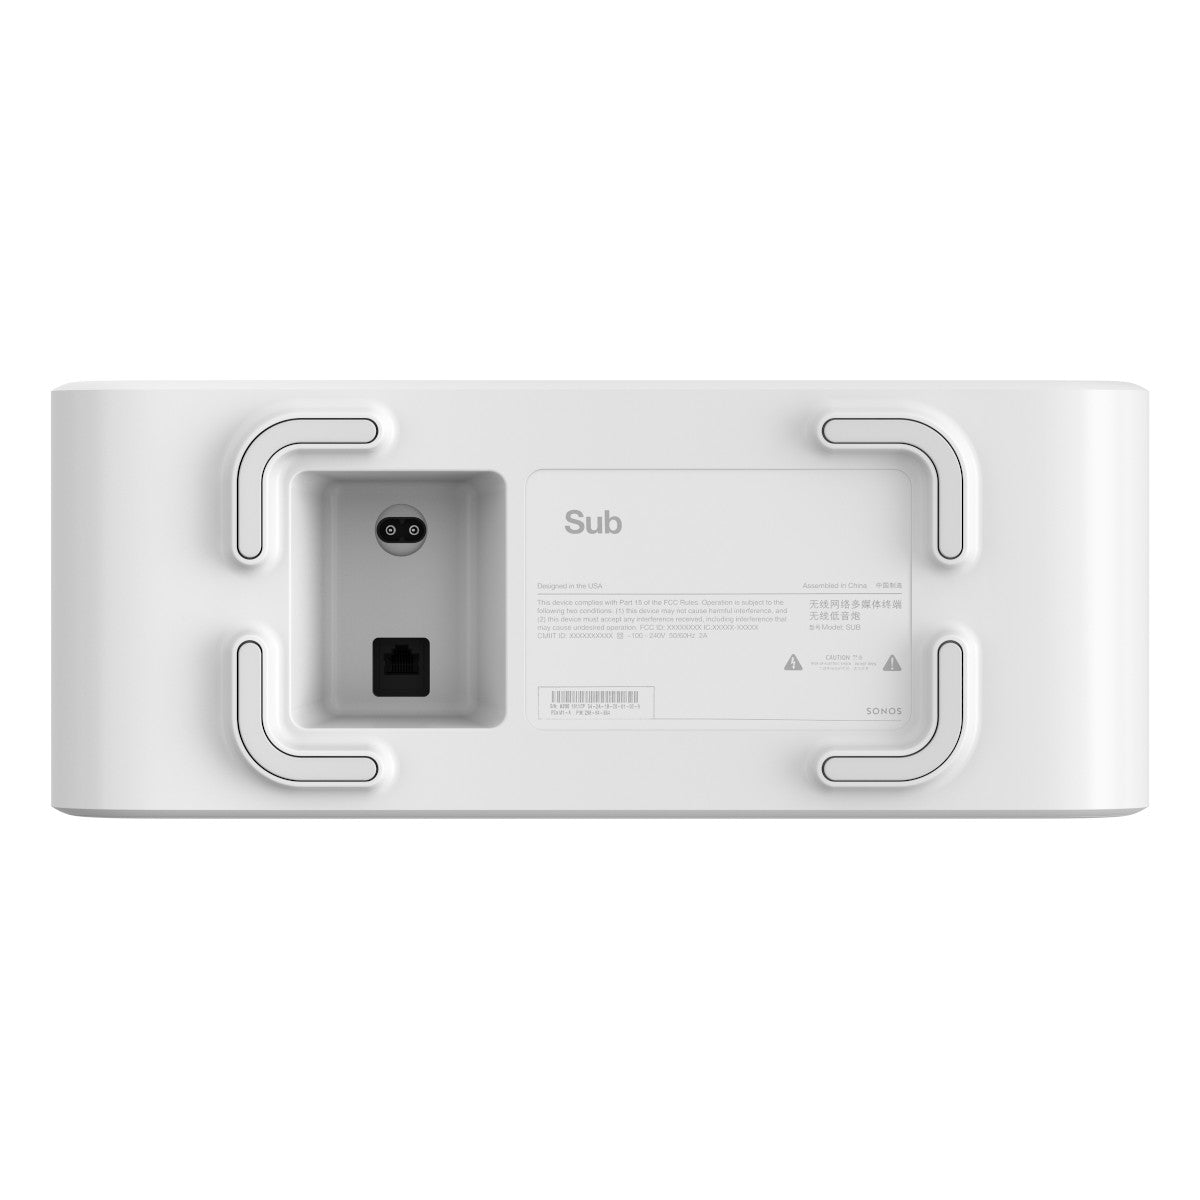 Sonos Premium Immersive Set with Beam (Gen 2) Soundbar, Sub Wireless Subwoofer (Gen 3), and Pair of Era 100 Wireless Smart Speakers (White)